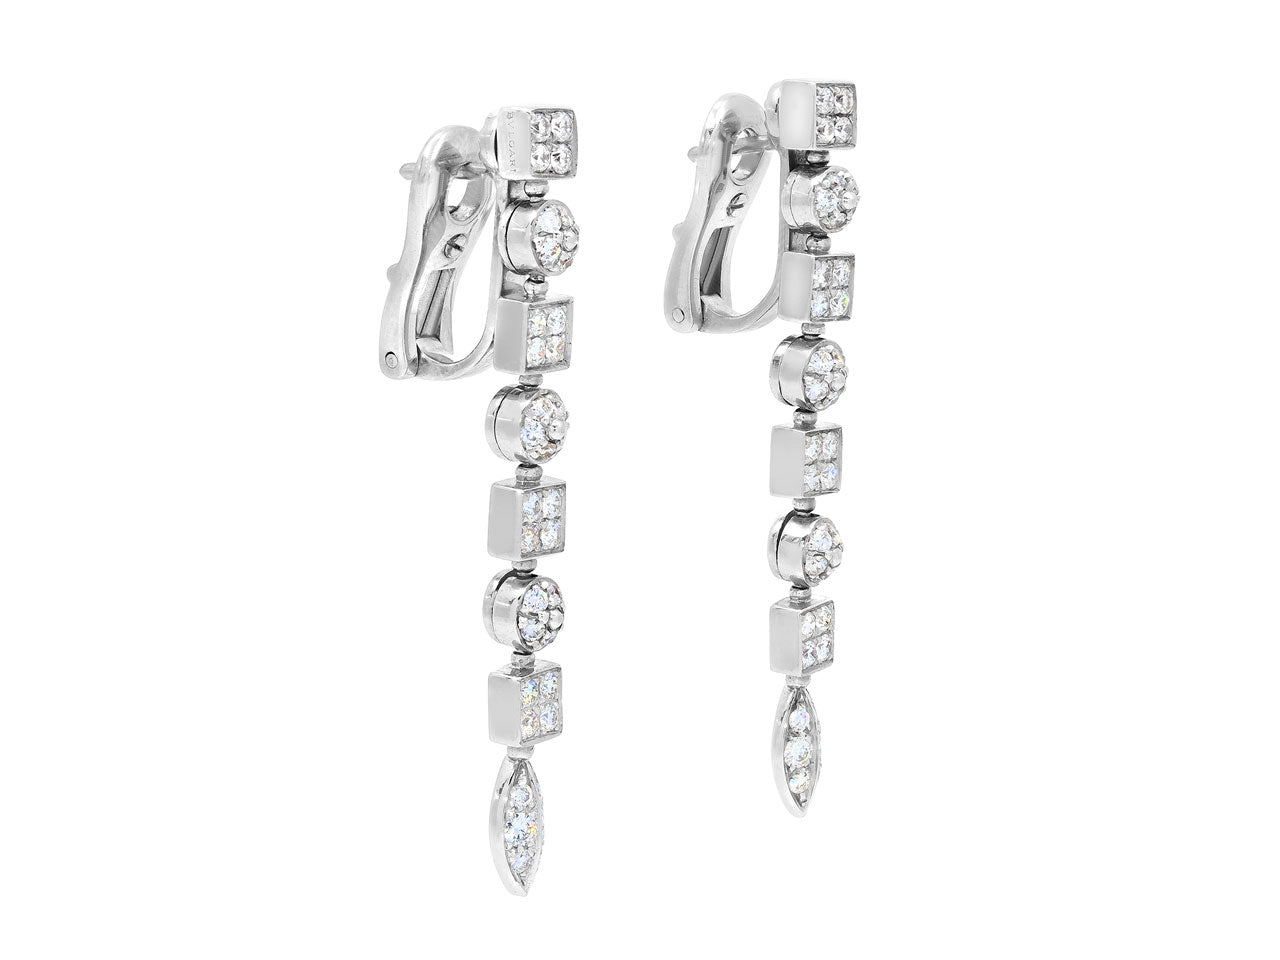 Bulgari 'Lucea' Diamond Earrings in 18K White Gold